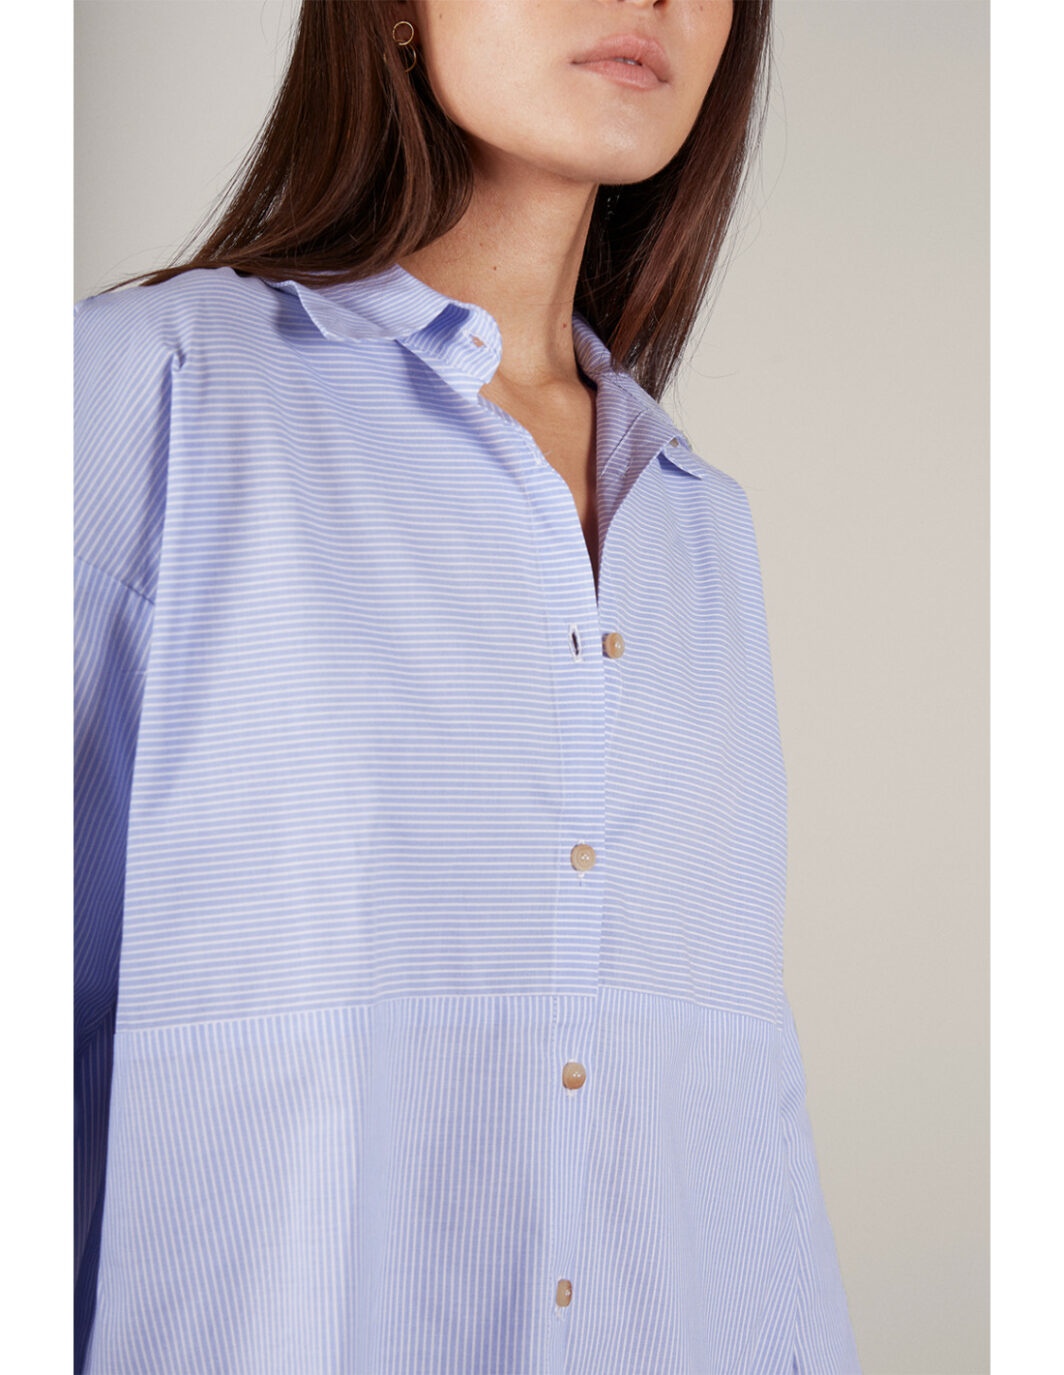 chemise oversize coton naturelle VIVIAN MUS&BOMBON marque espagnole éco-friendly